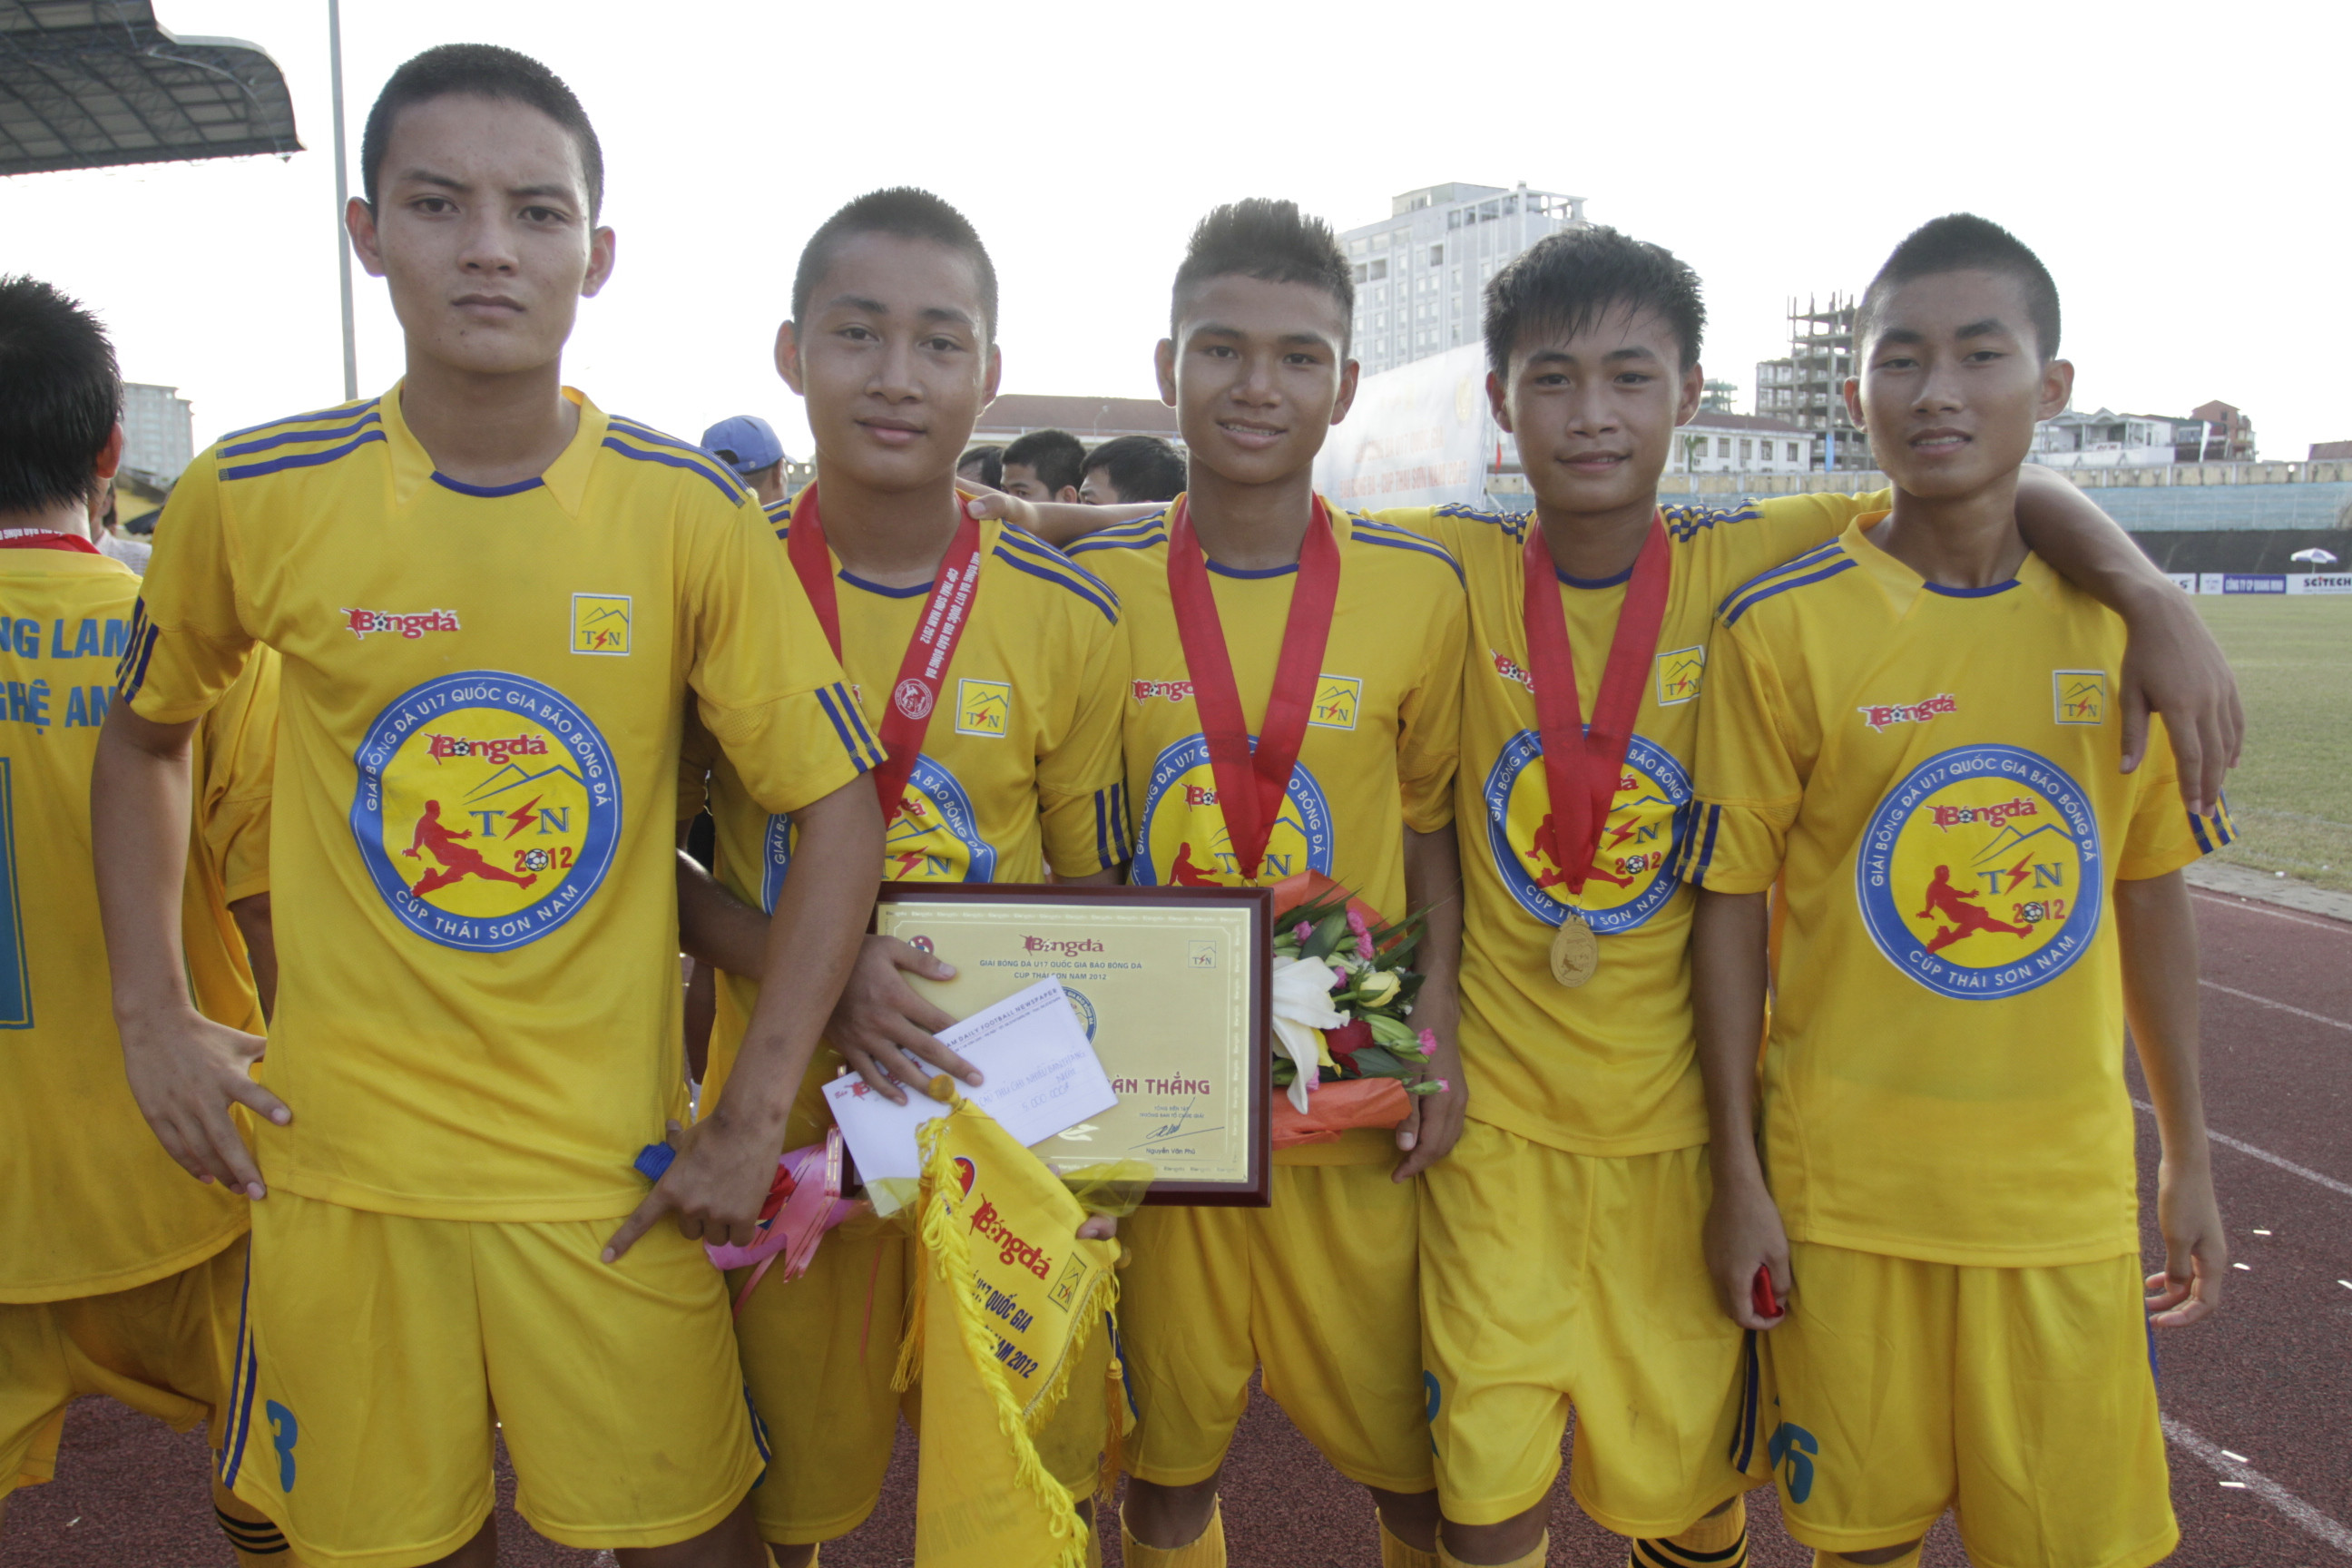 Lần gần nhất U17 SLNA đăng quang tại Giải U17 quốc gia là năm 2012 với lứa cầu thủ trụ cột đội 1 đang chơi tại V.League lúc này. Ảnh: Quang Thái